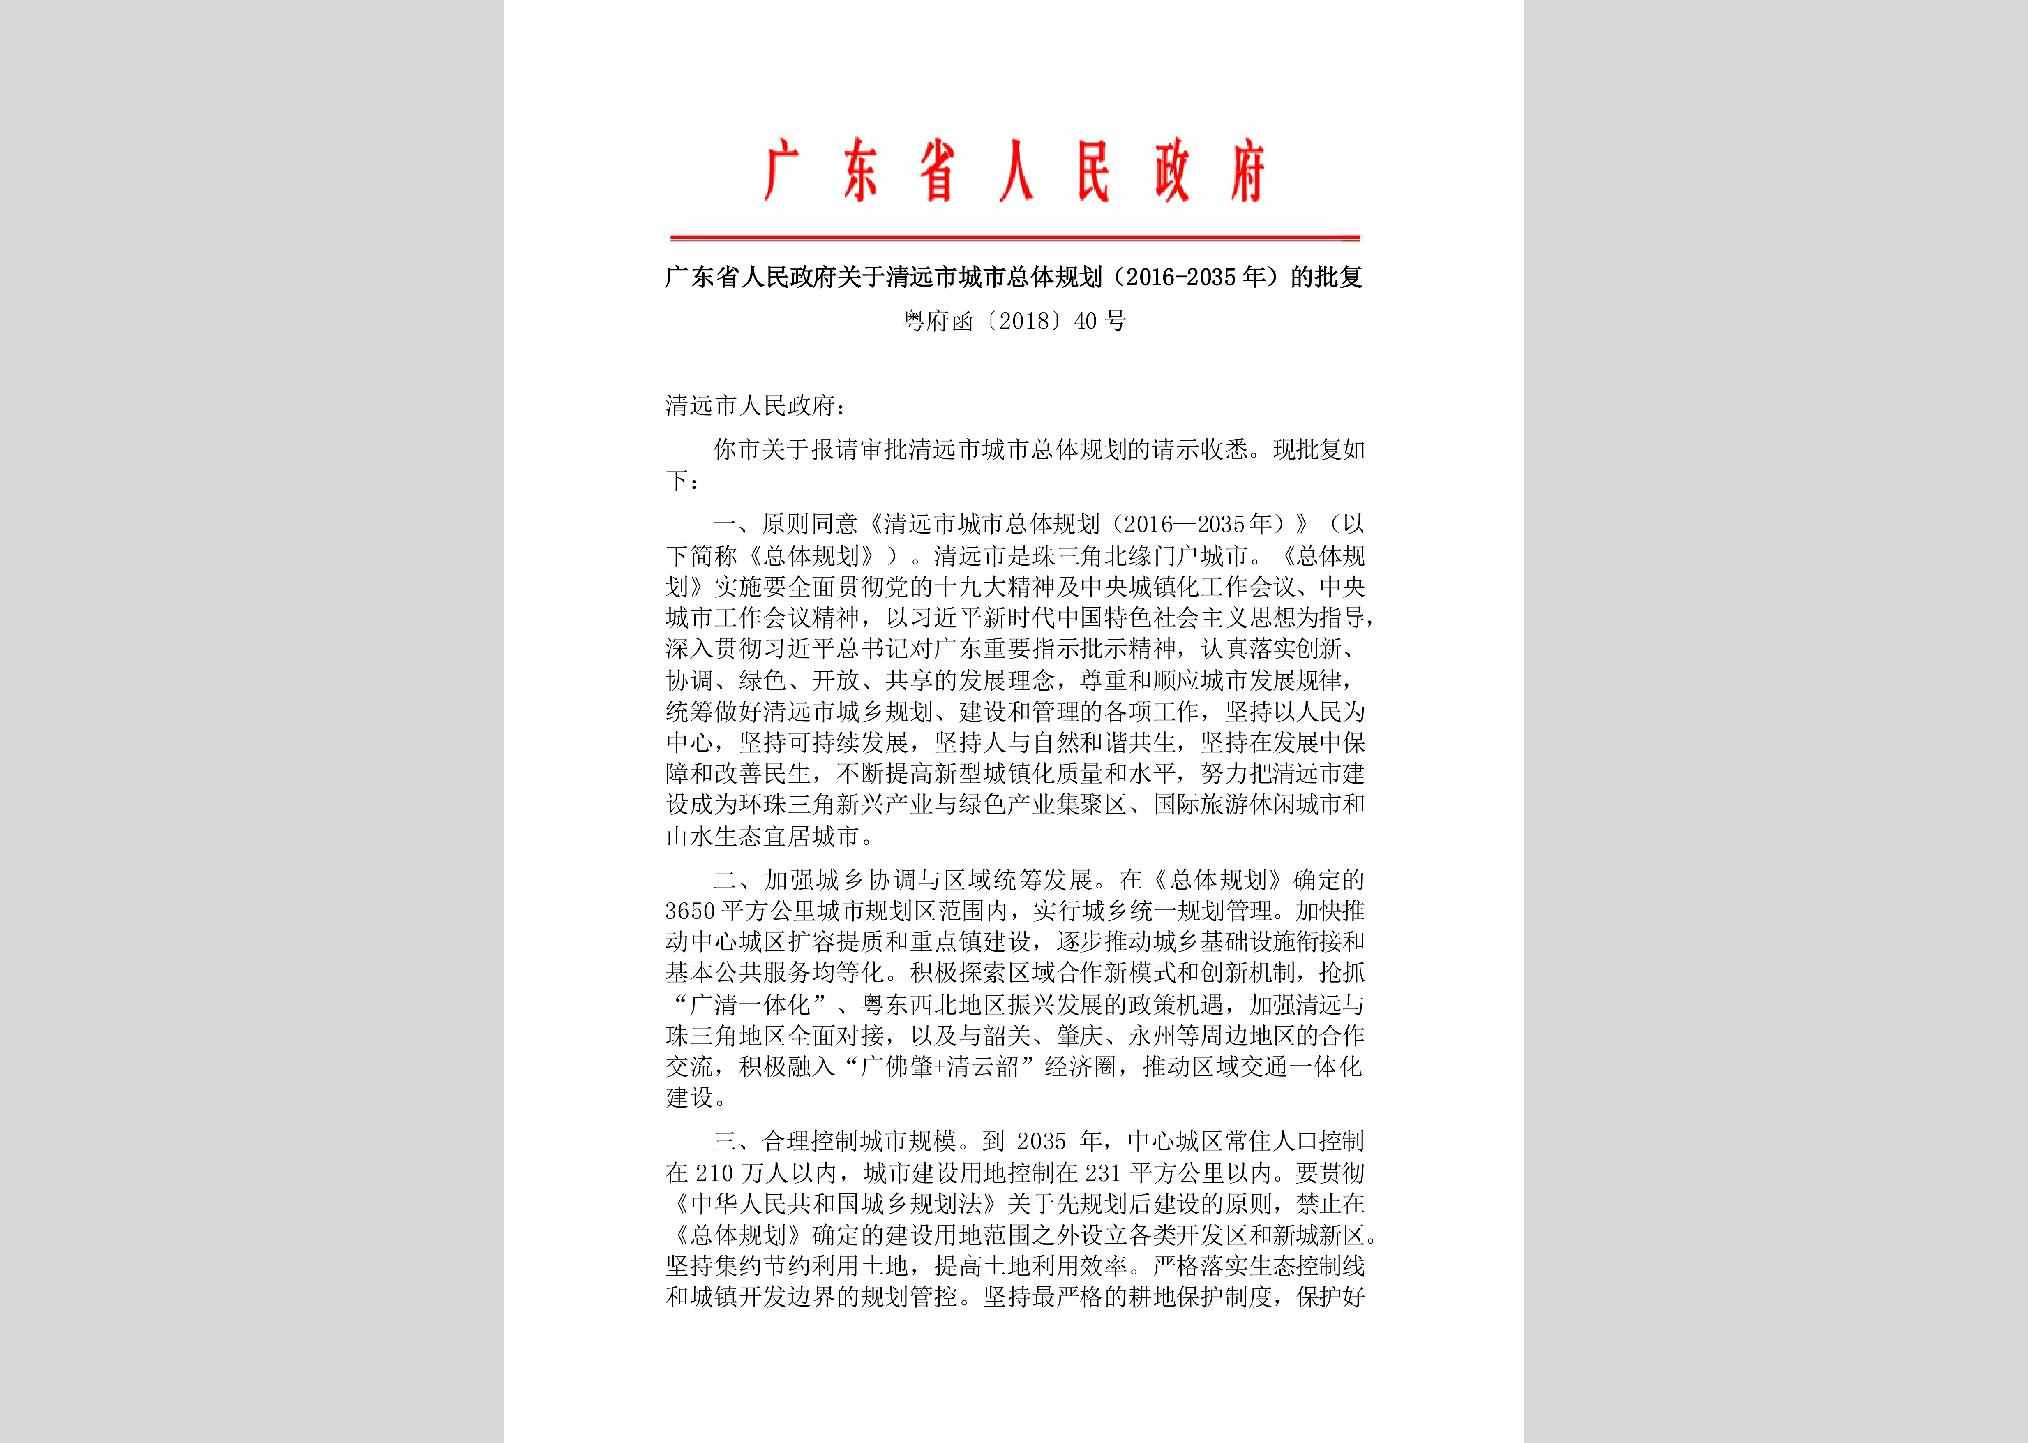 粤府函[2018]40号：广东省人民政府关于清远市城市总体规划(2016—2035年)的批复